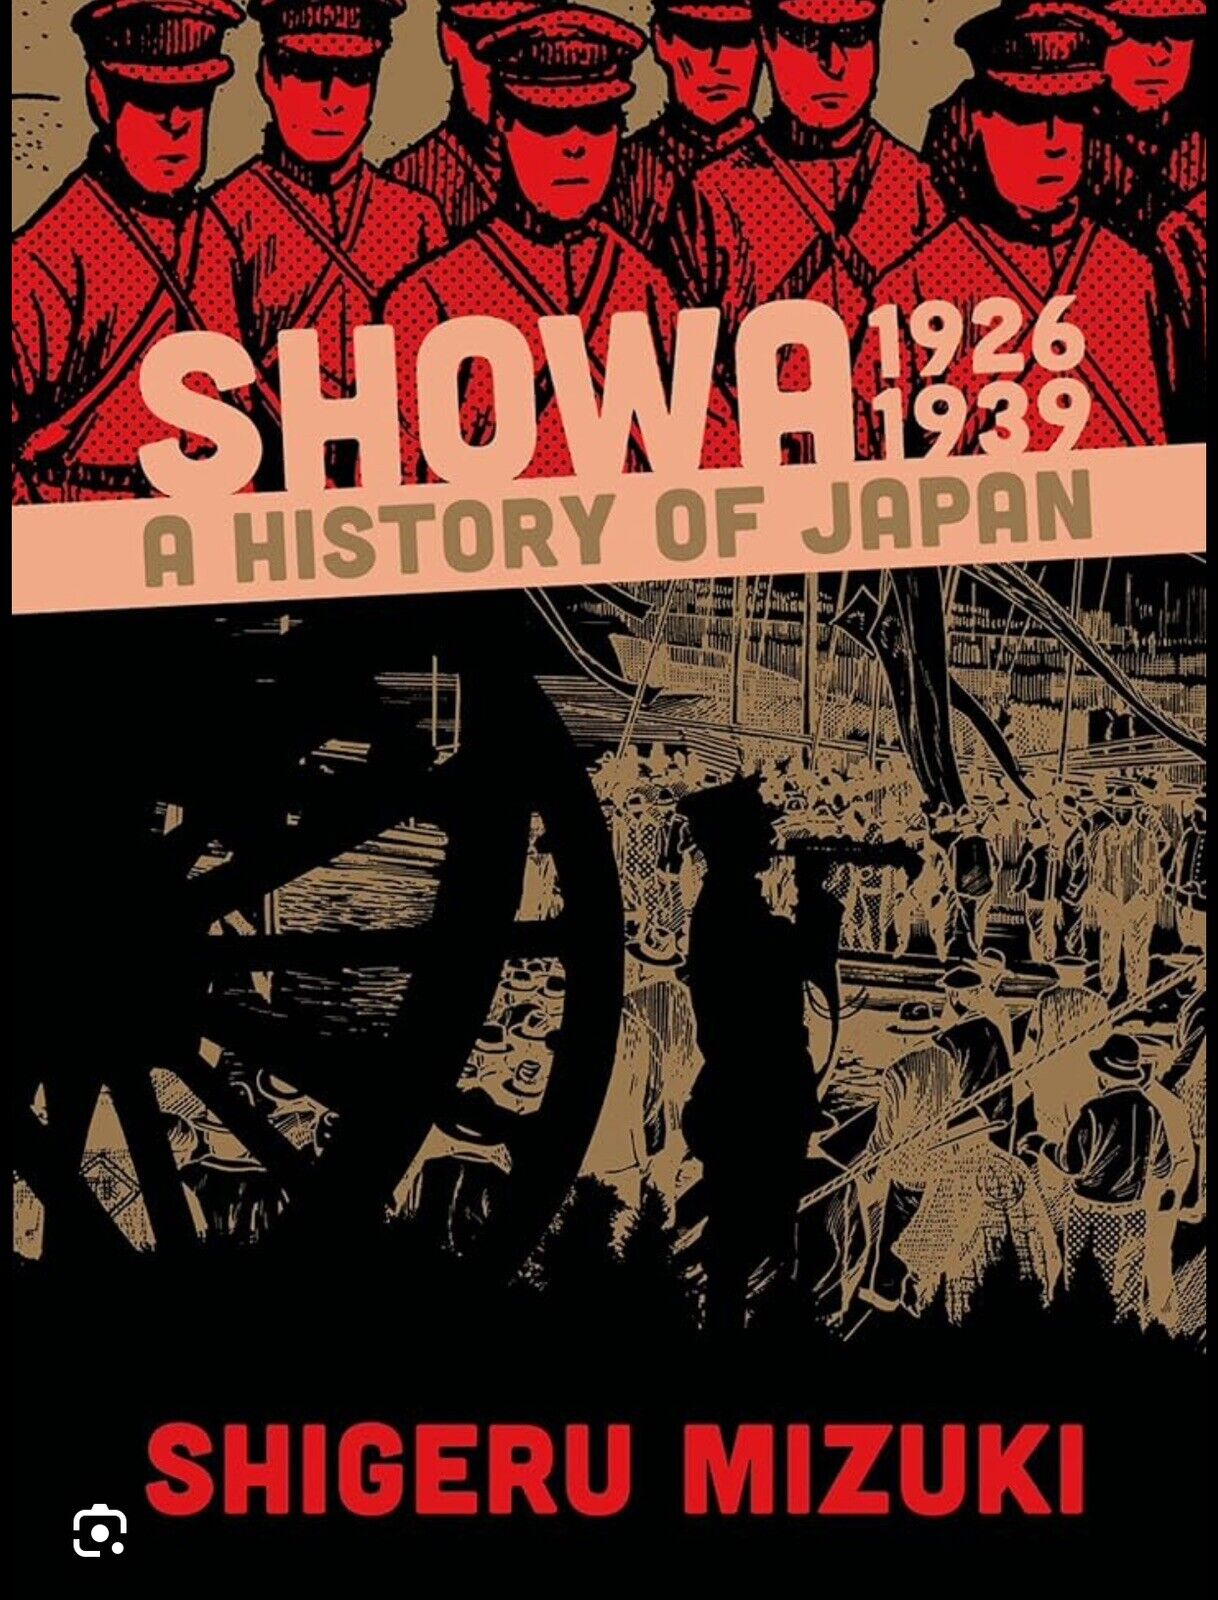 Showa 1926-1939 A History Of Japan - By Shigeru Mizuki - Softcover Manga Comic